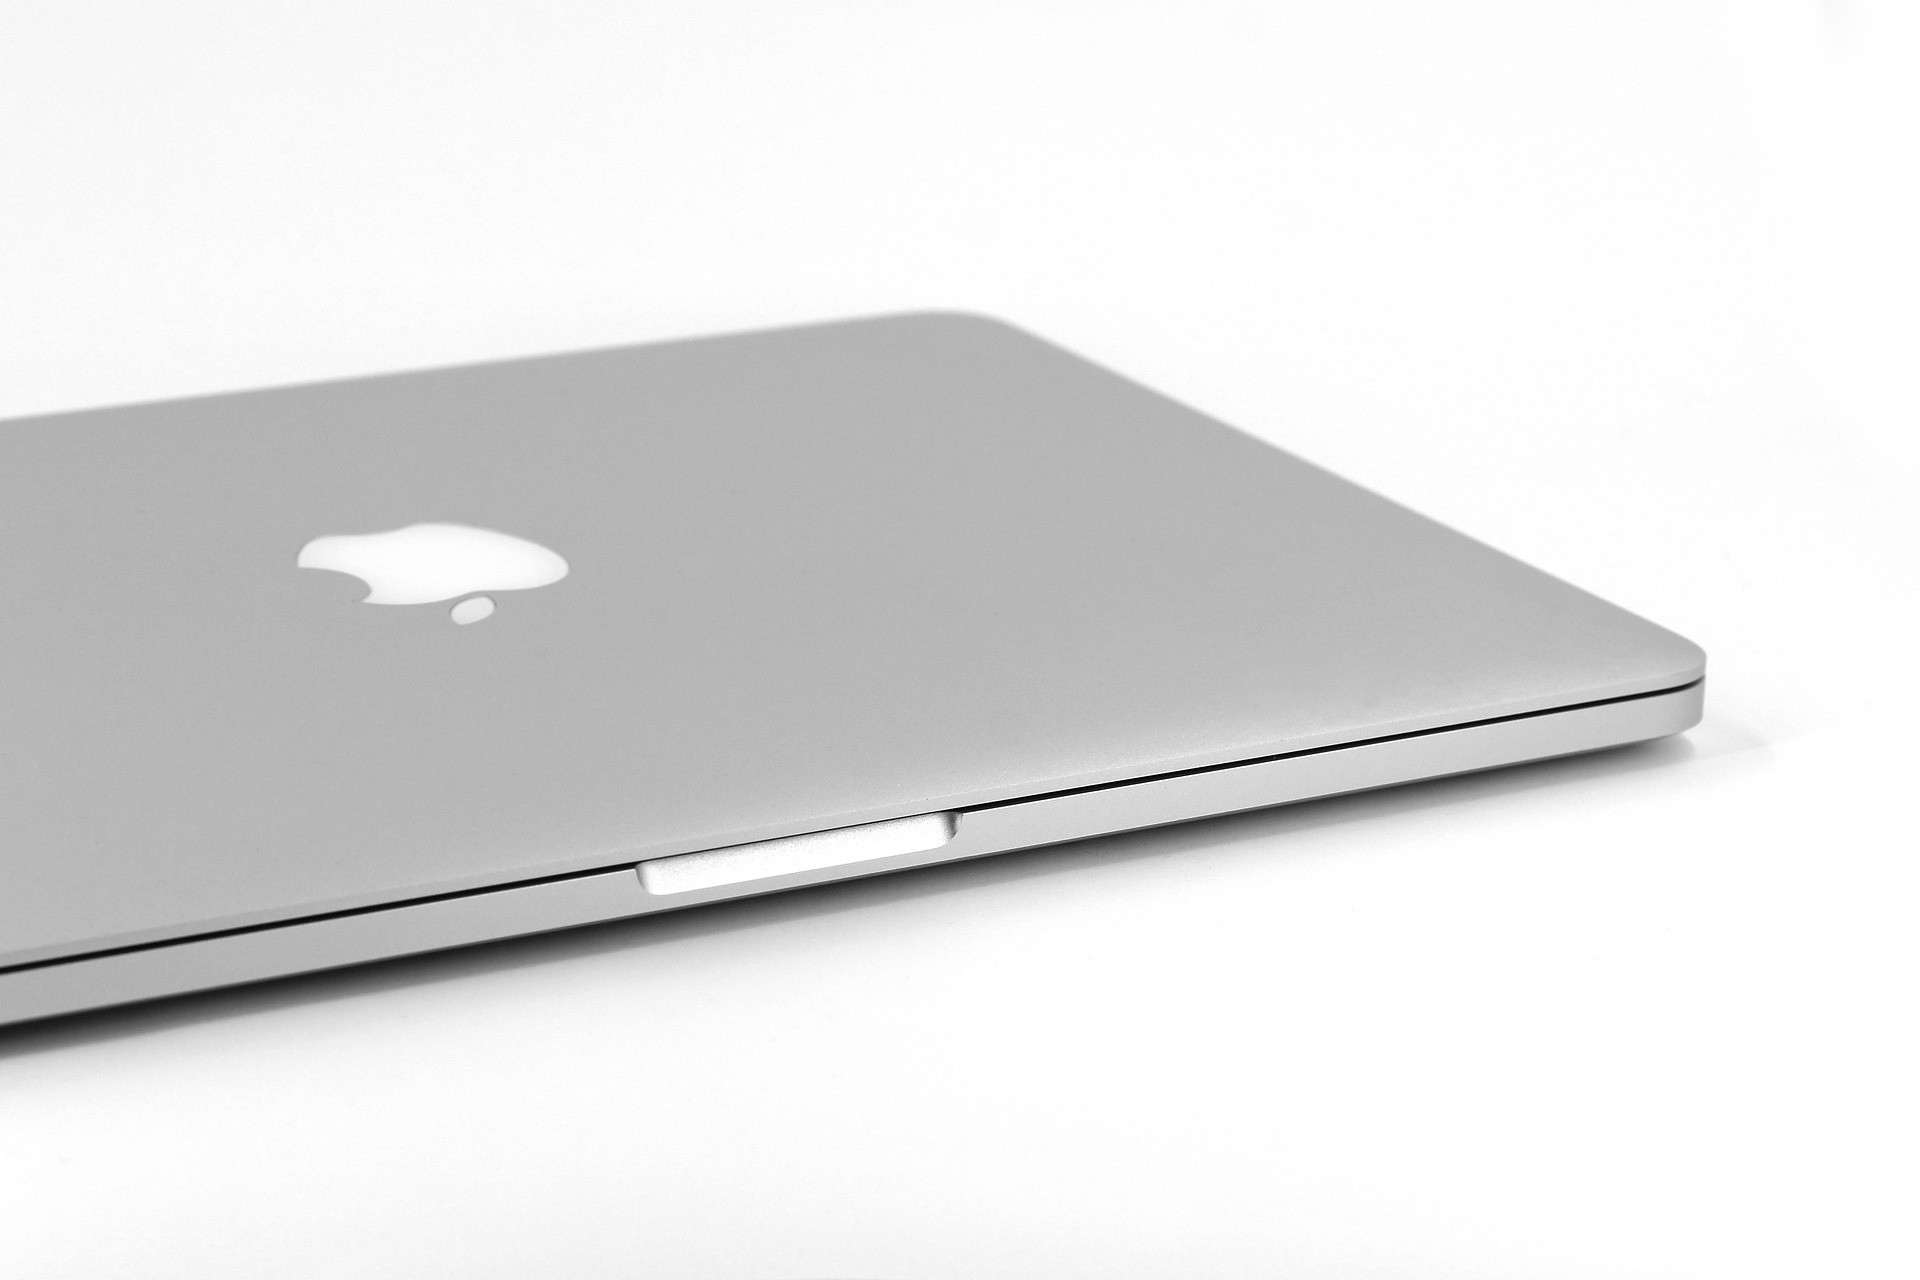 Welches Apple MacBook Modell habe ich? Finden Sie es heraus!